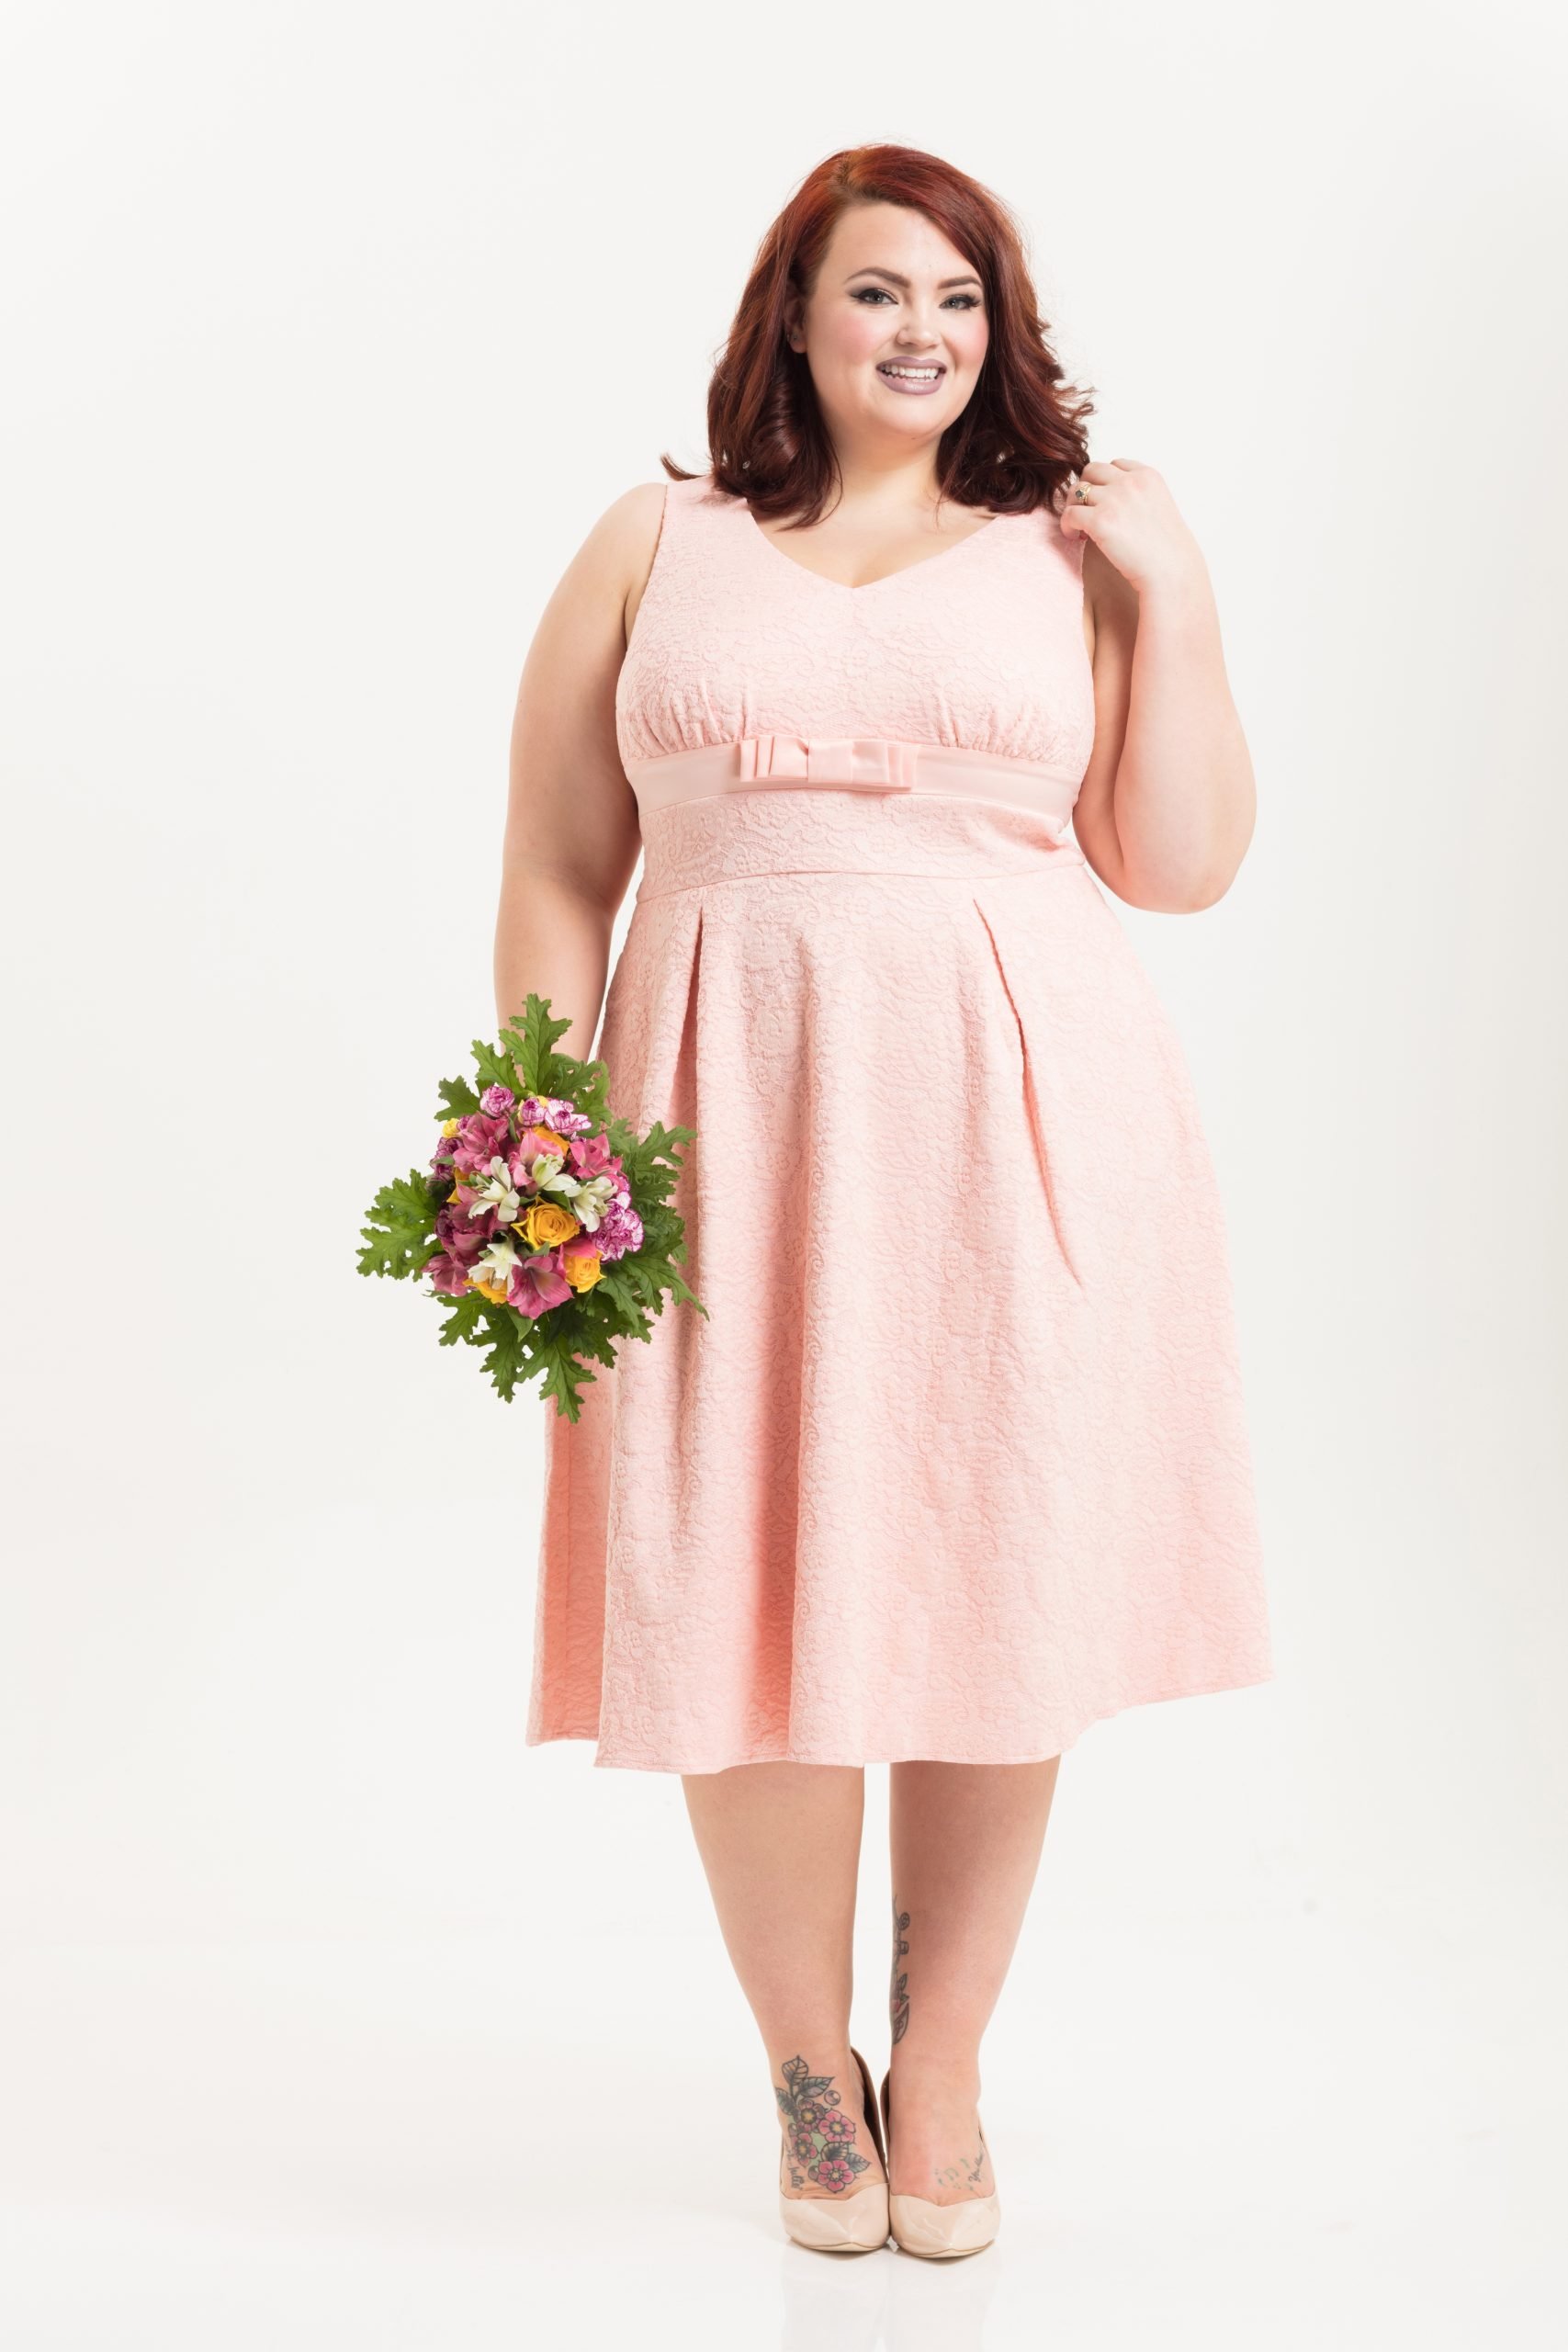 Lauren Peach Plus Size Bridal Dress